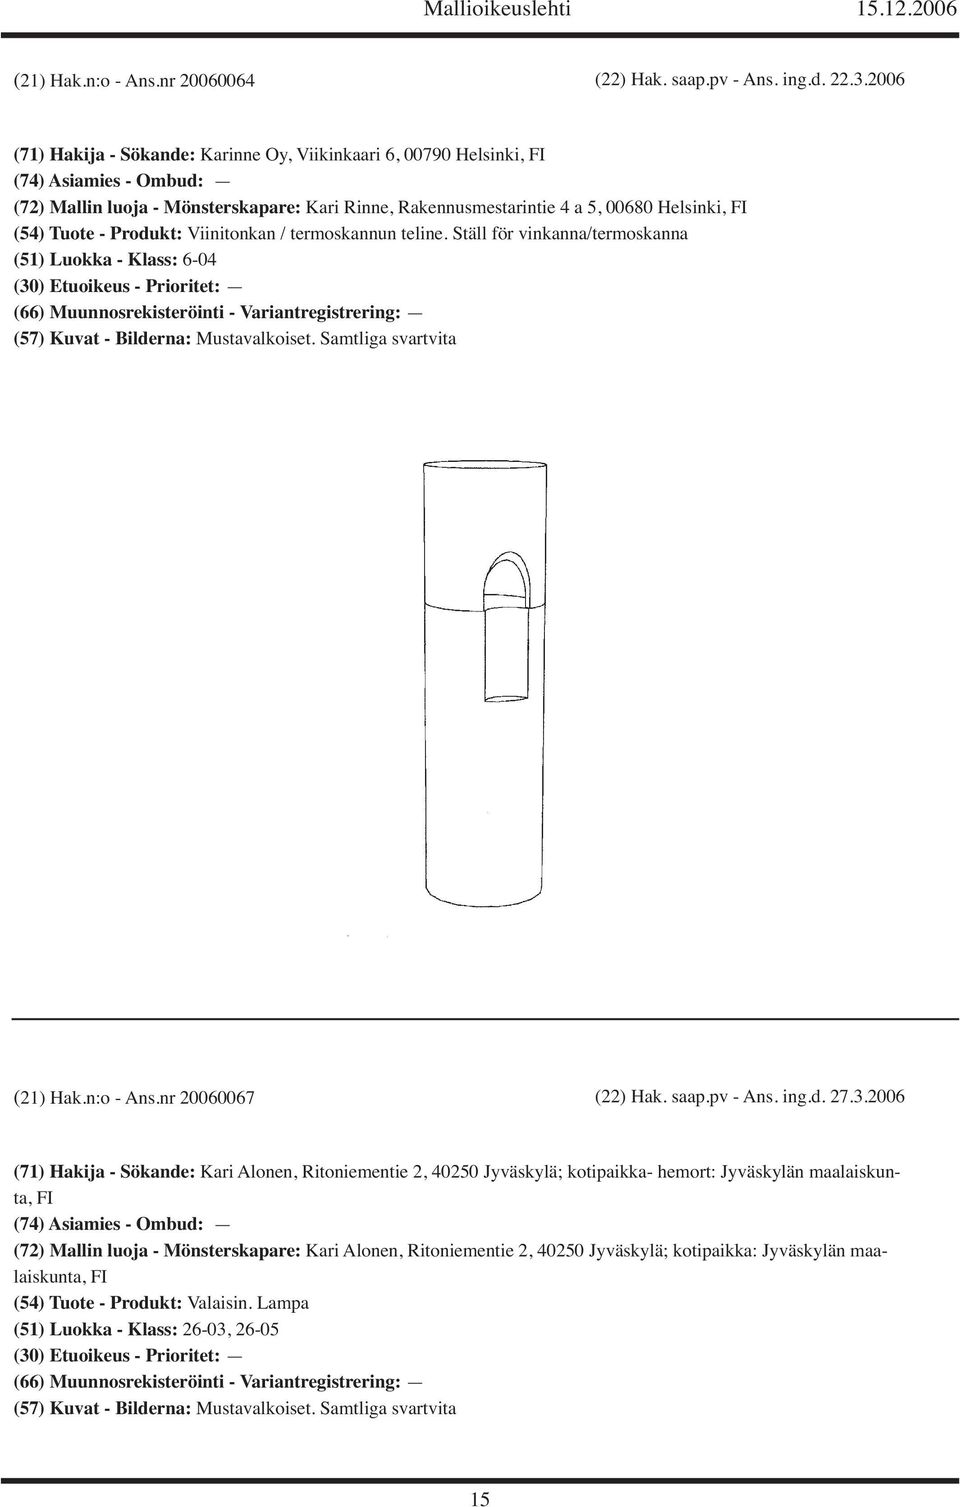 Tuote - Produkt: Viinitonkan / termoskannun teline. Ställ för vinkanna/termoskanna (51) Luokka - Klass: 6-04 (21) Hak.n:o - Ans.nr 20060067 (22) Hak. saap.pv - Ans. ing.d. 27.3.